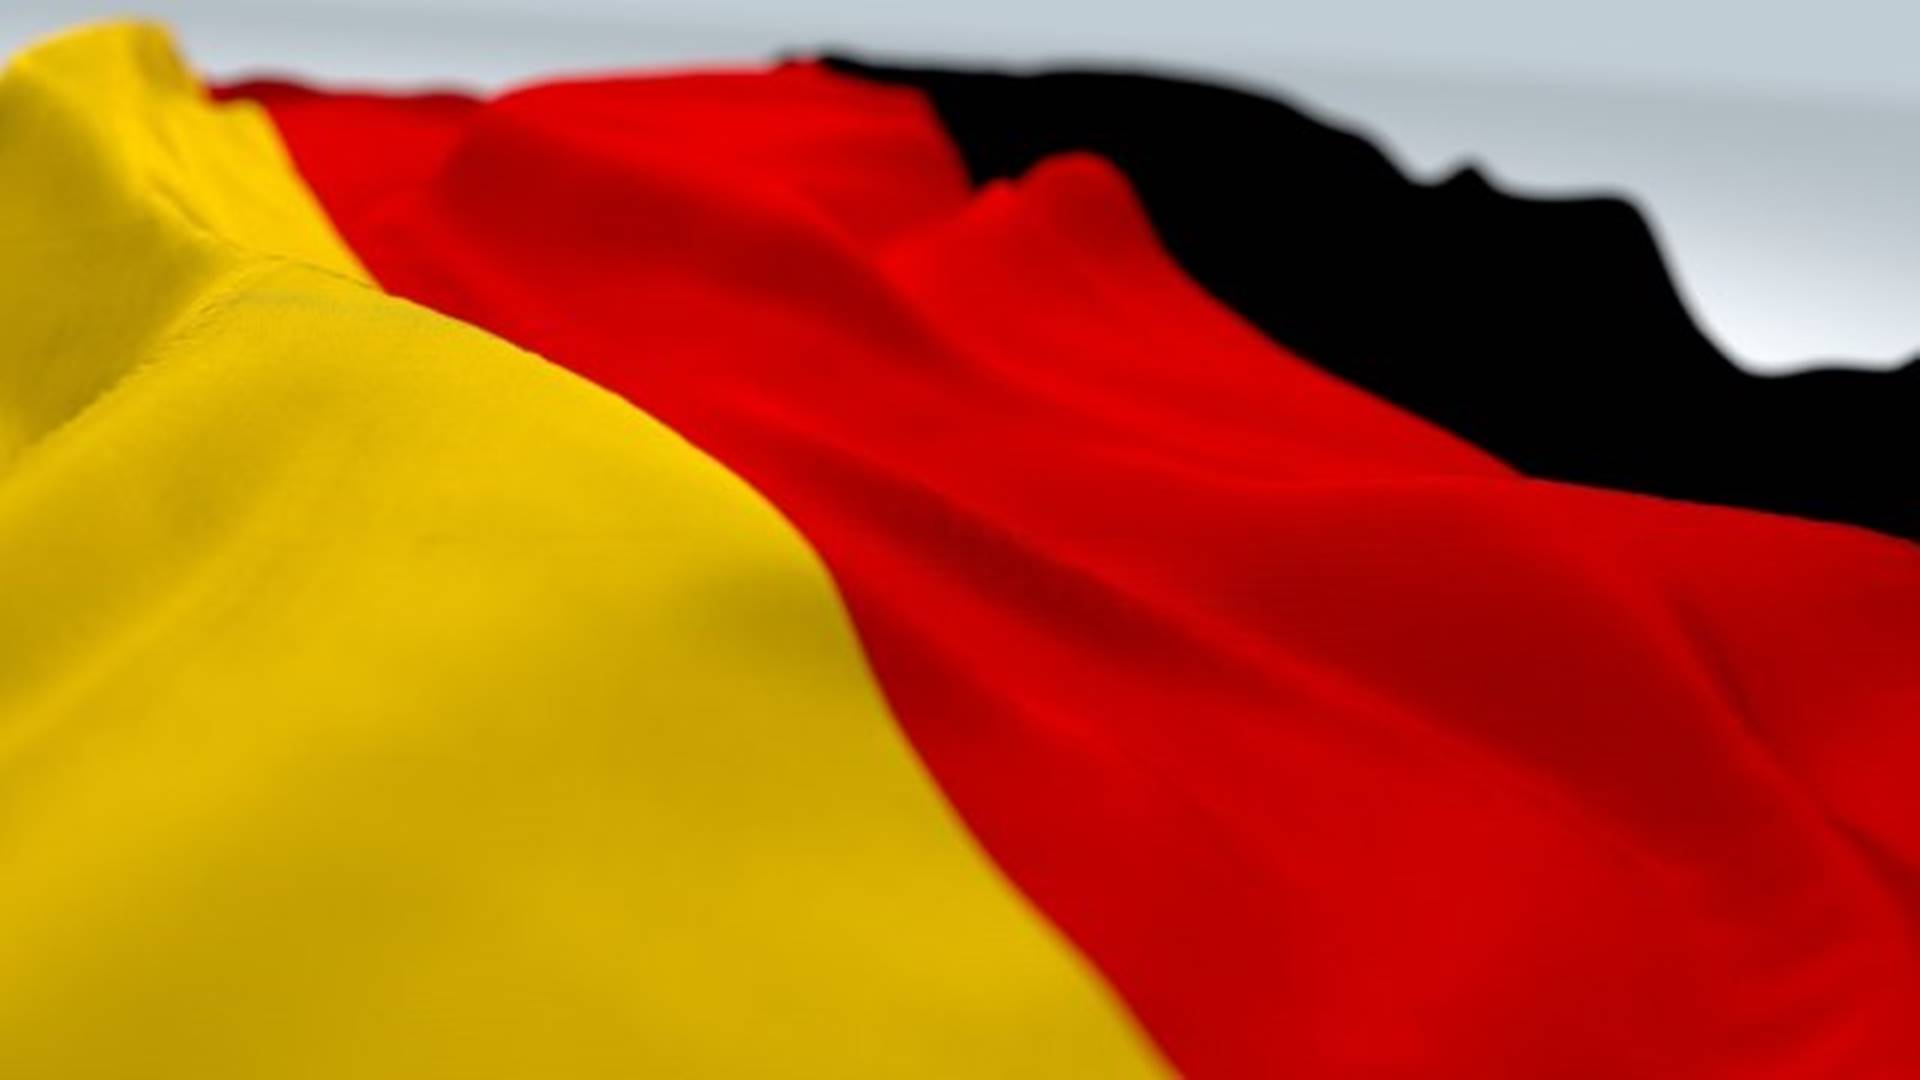 Nemci u problemu, revoluciju dižu – na Tviteru